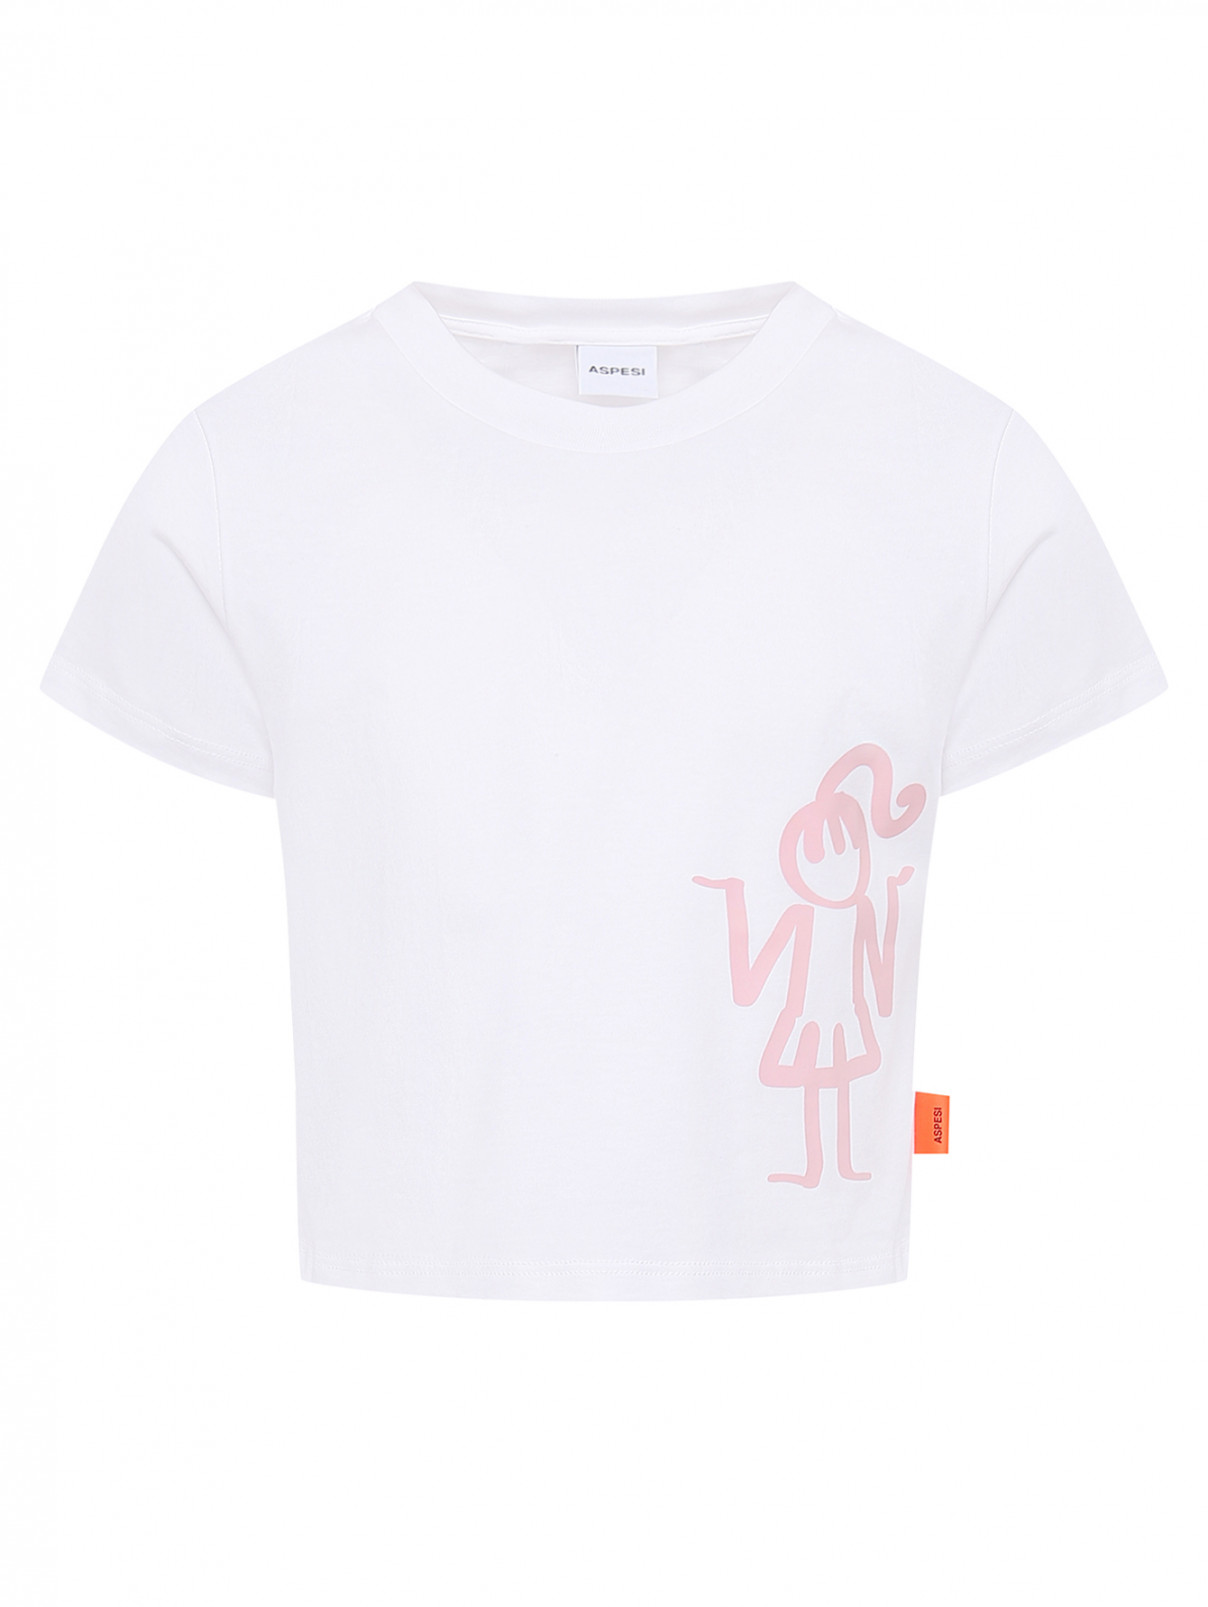 Трикотажная футболка с принтом Aspesi  –  Общий вид  – Цвет:  Белый